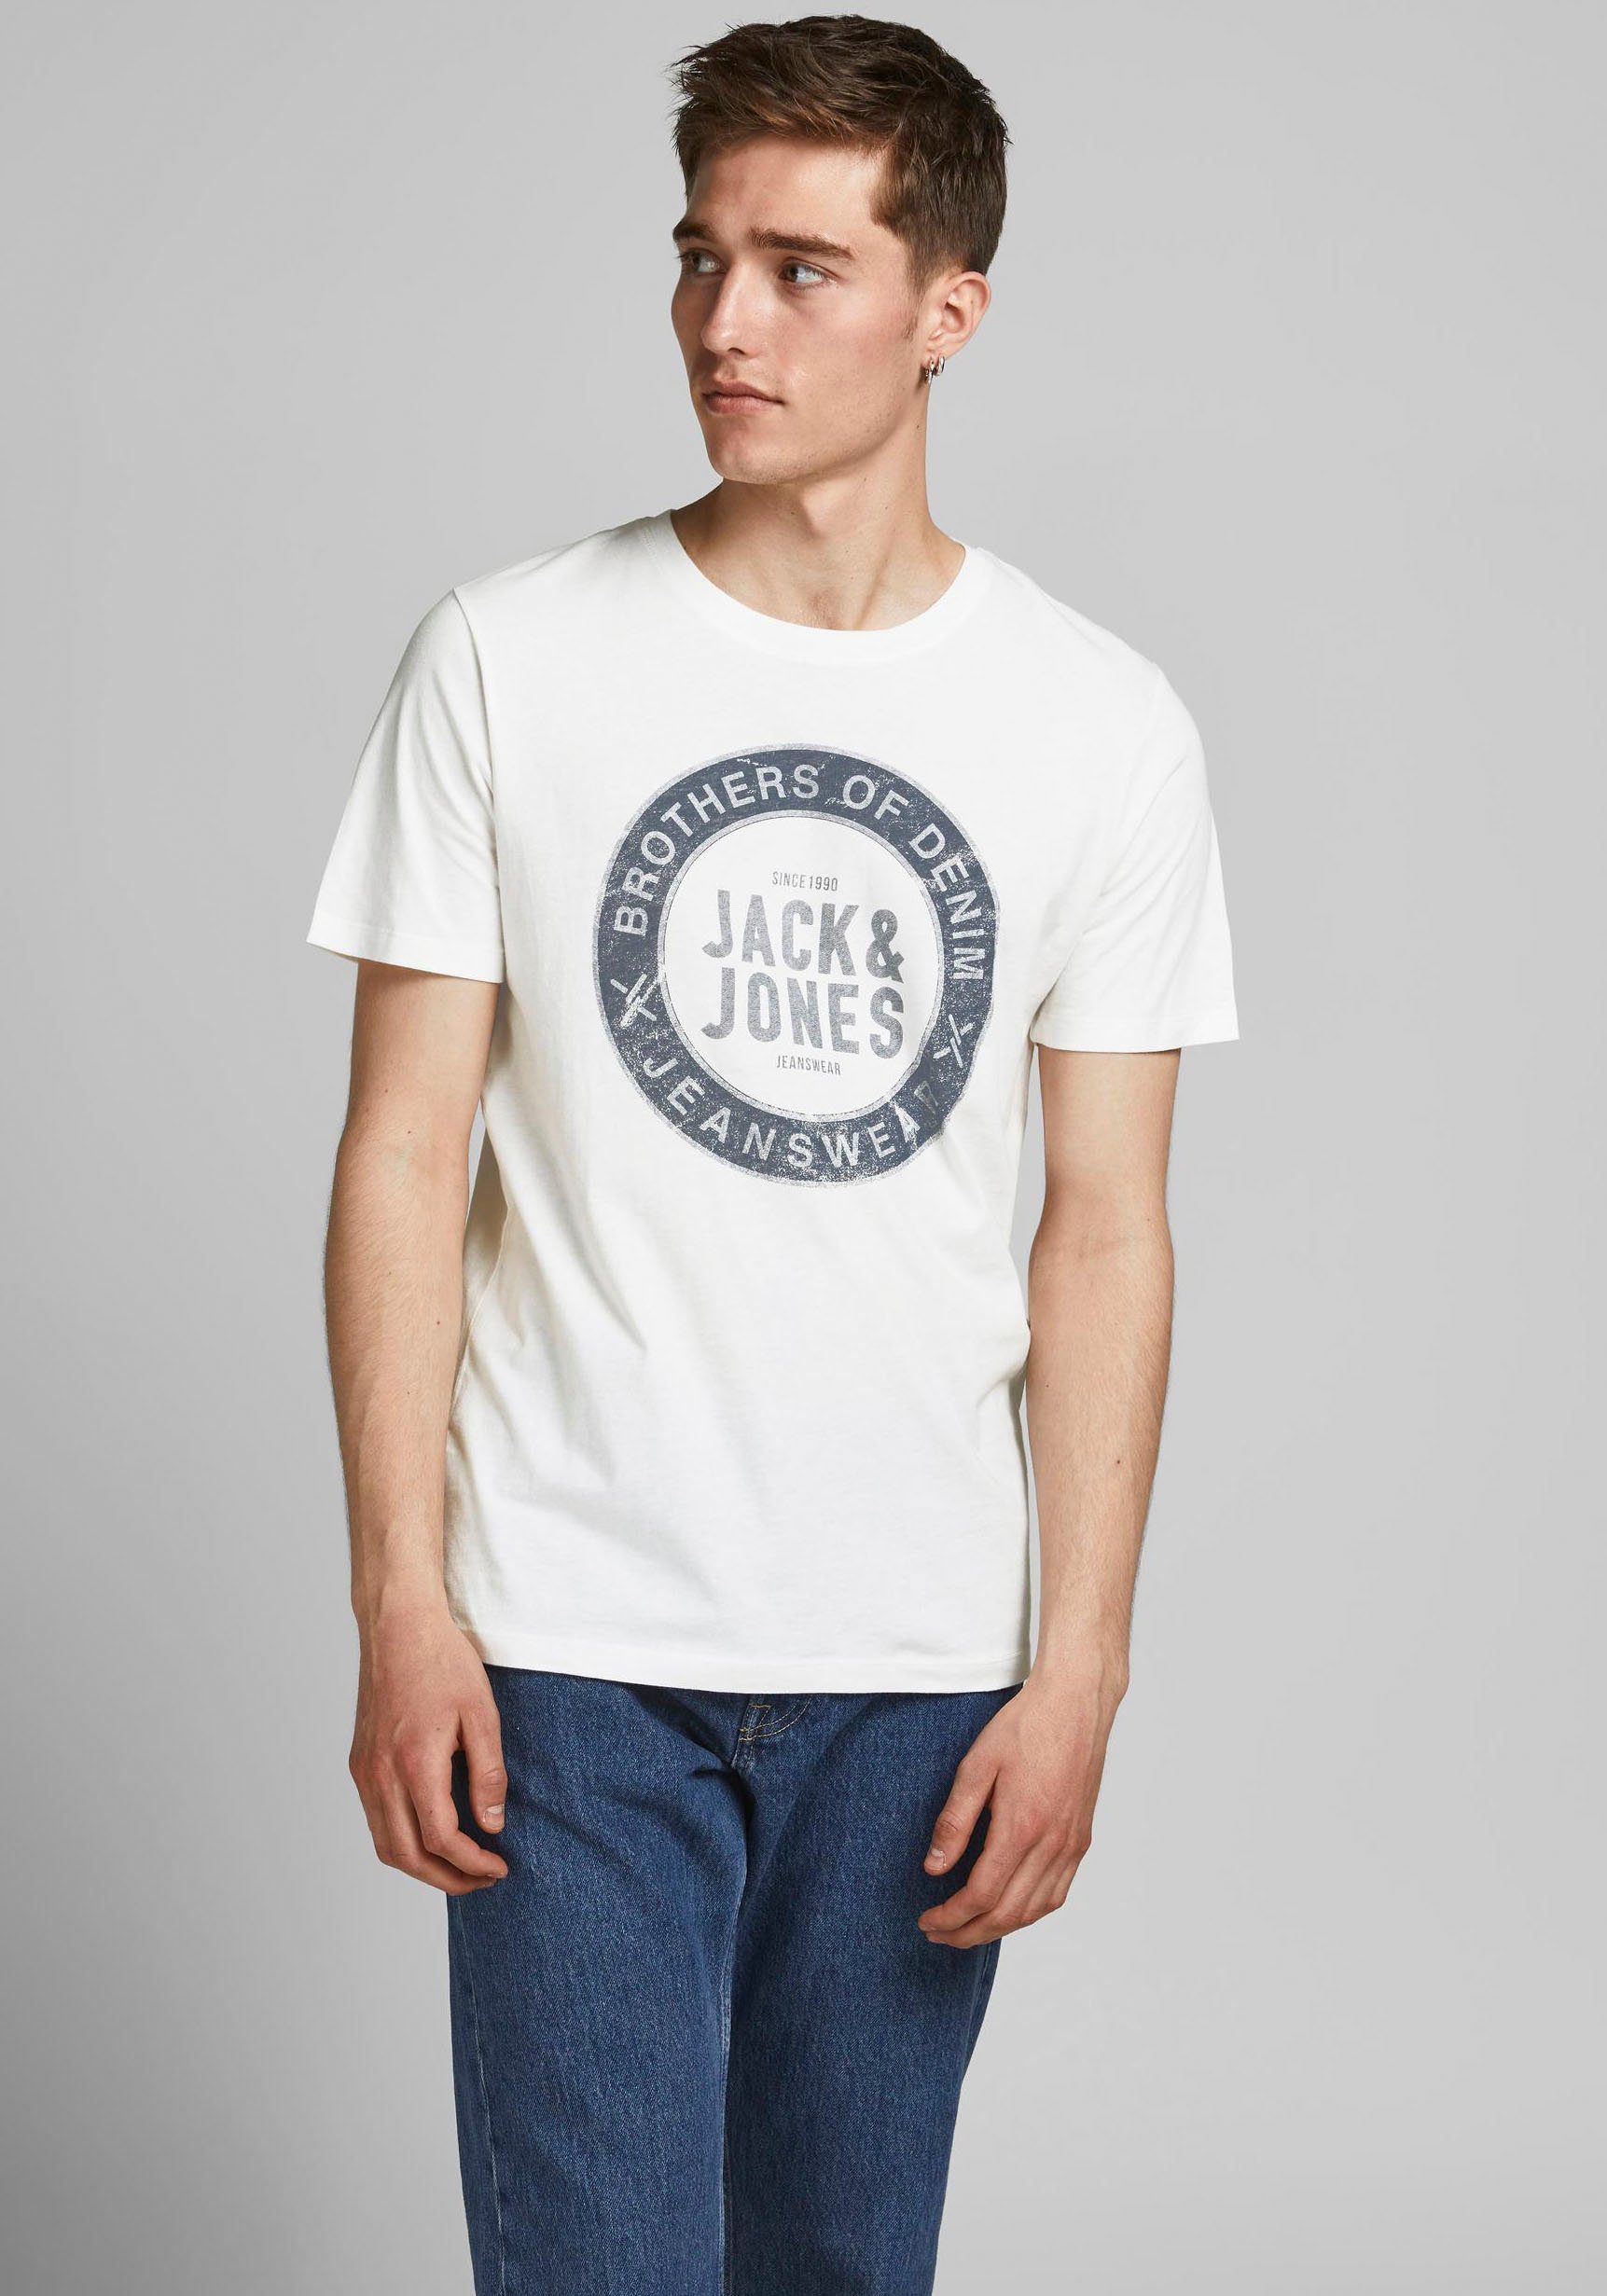 Jack & Jones T-Shirt Jeans cm L Tee, Größe groß Model ca. und ist trägt Das 188